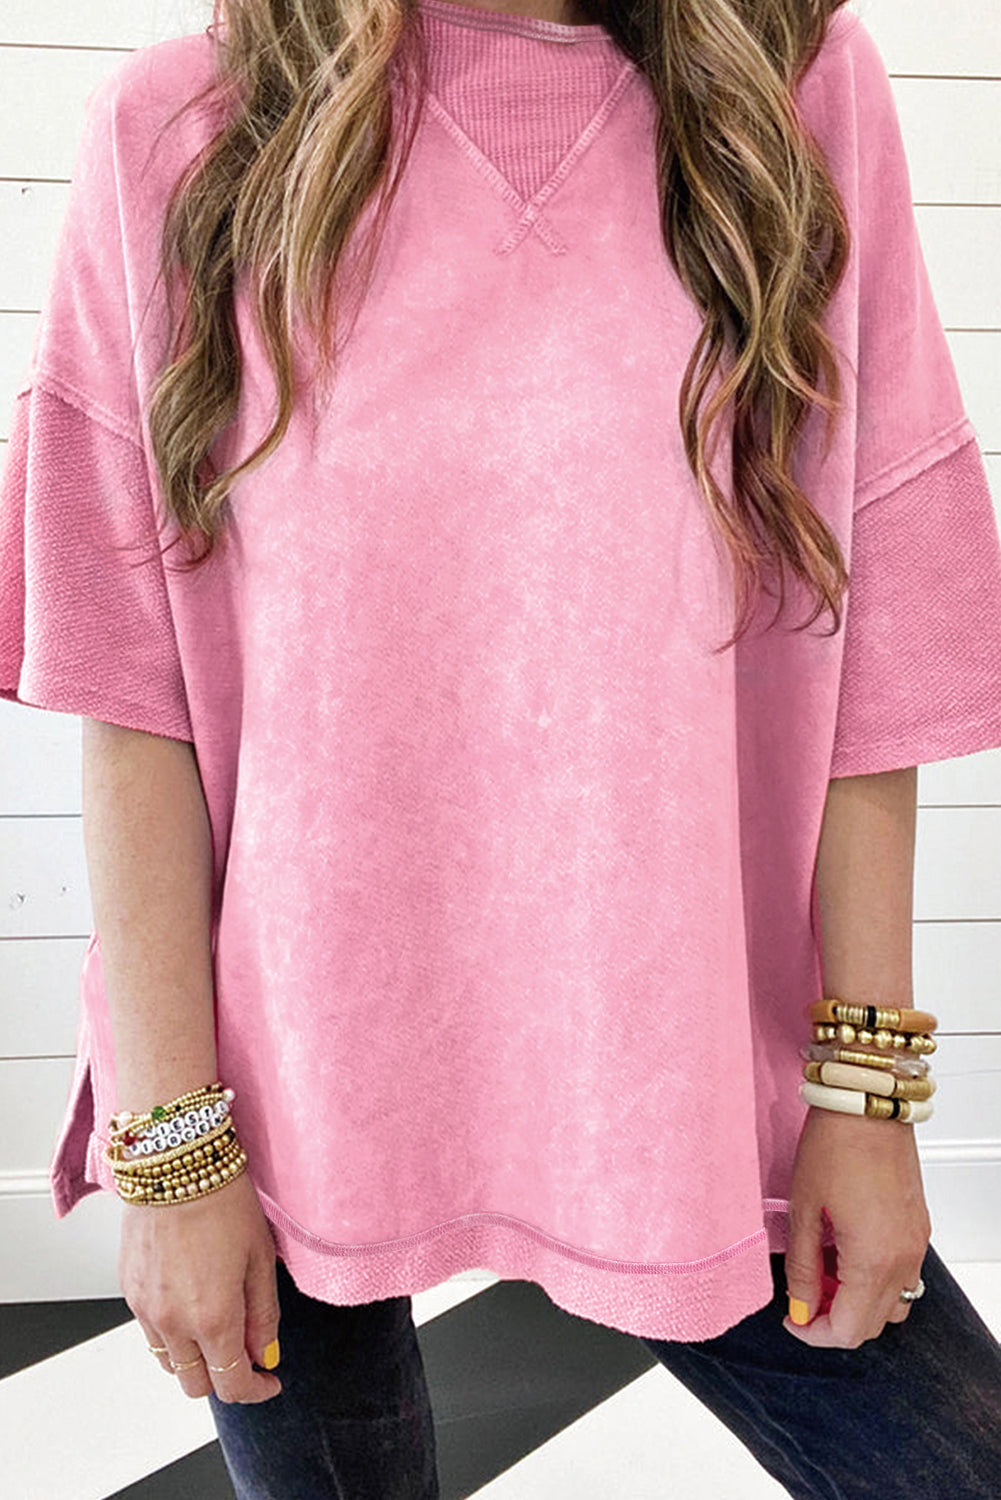 T-shirt surdimensionné à épaules tombantes et coutures apparentes, délavé minéral rose fraise